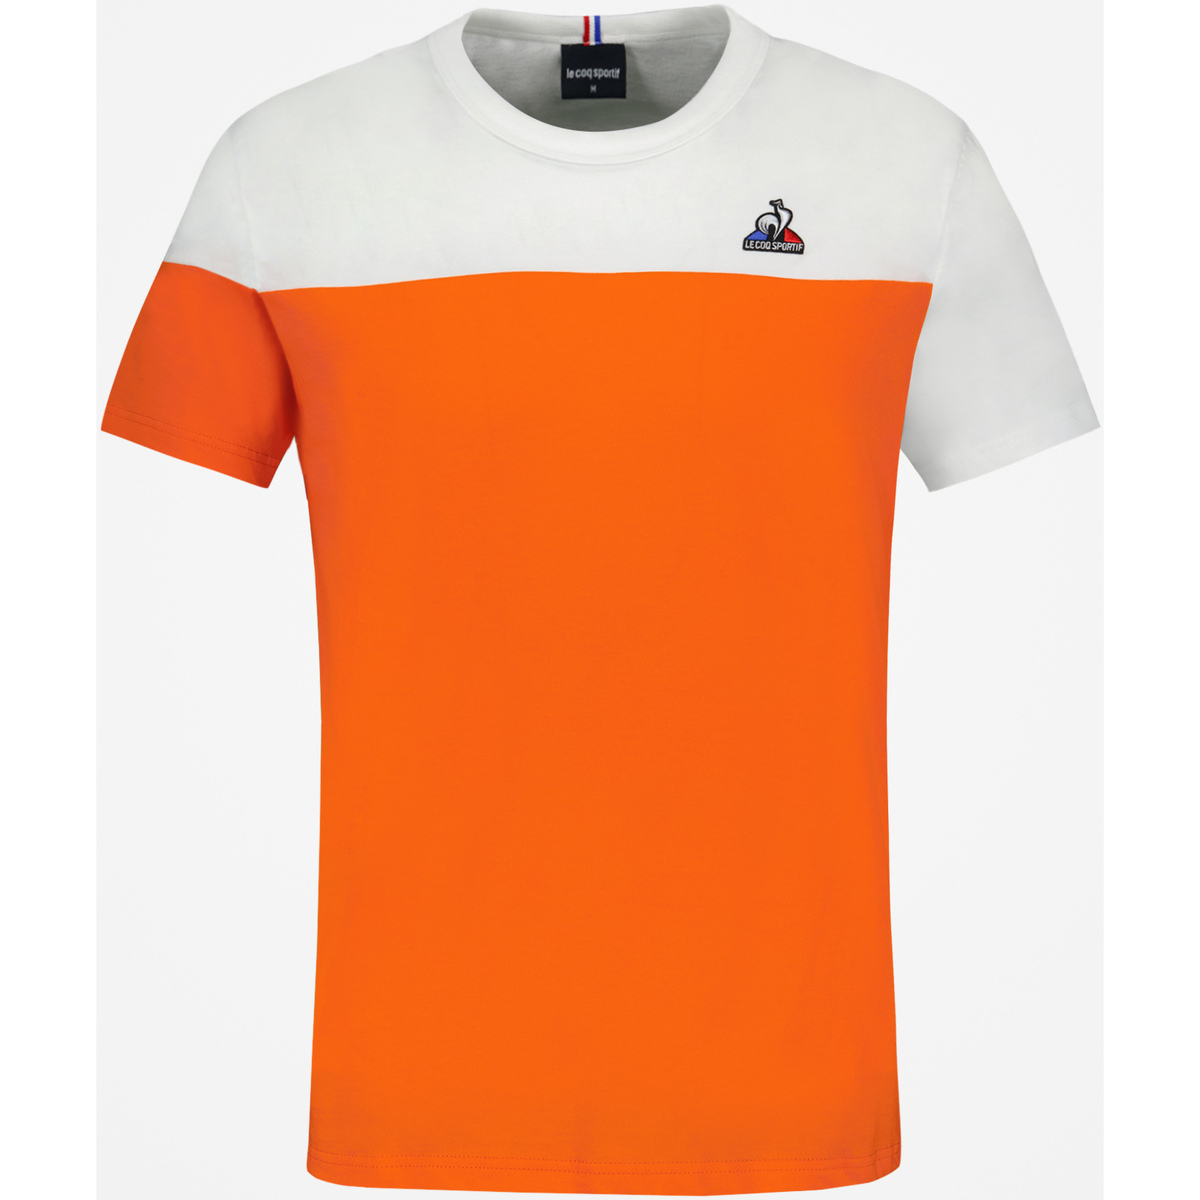 Le Coq Sportif Orange T-shirt Unisexe fvfptgy7